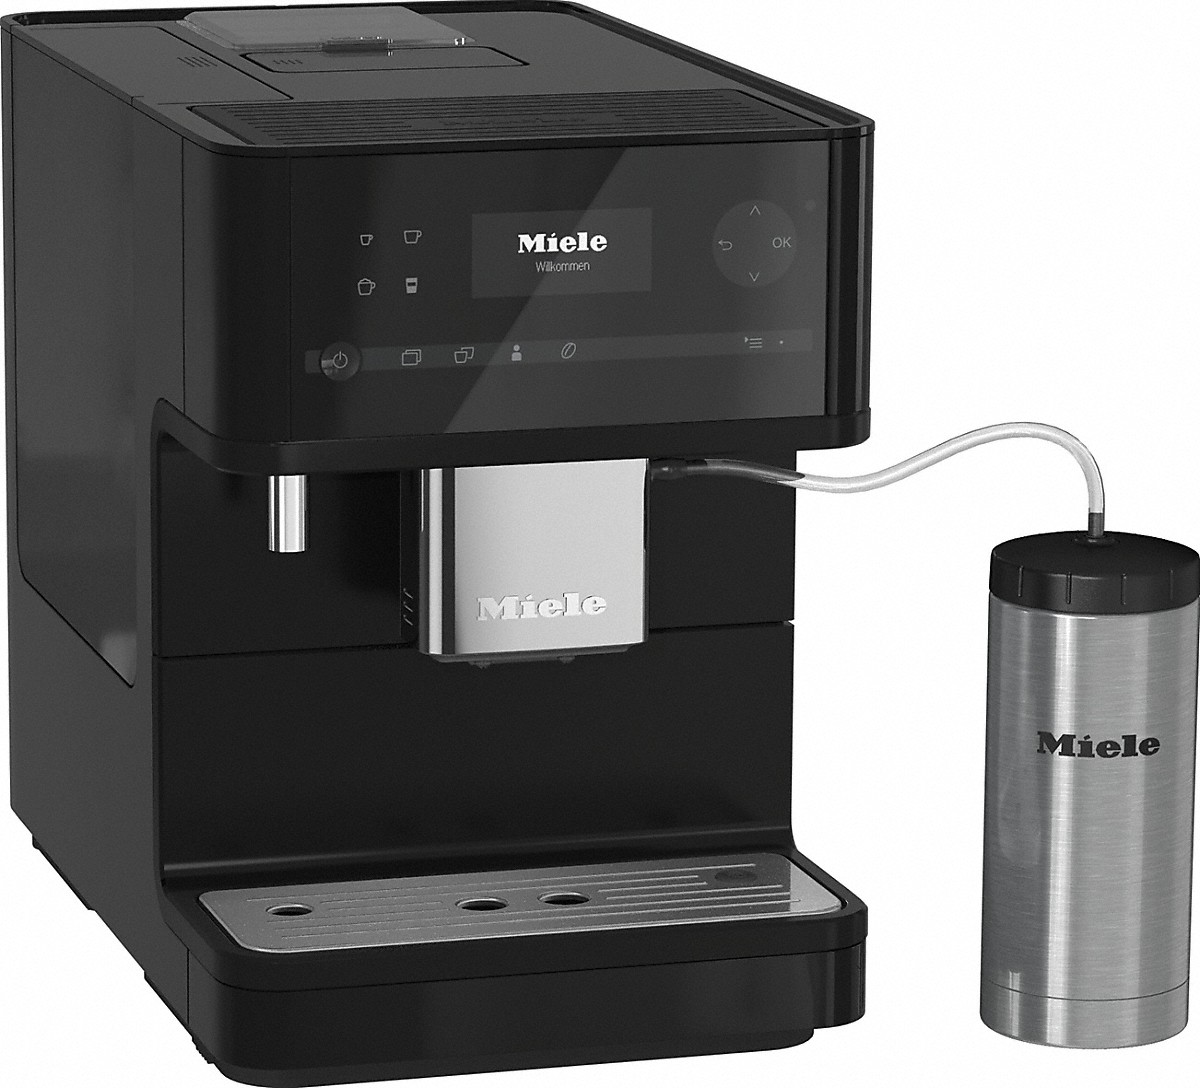 Miele Cm 6350 Black Edition Daten Vergleich Anleitung Reparatur Und Mitgliederwertung Bei Kaffeevollautomaten Org